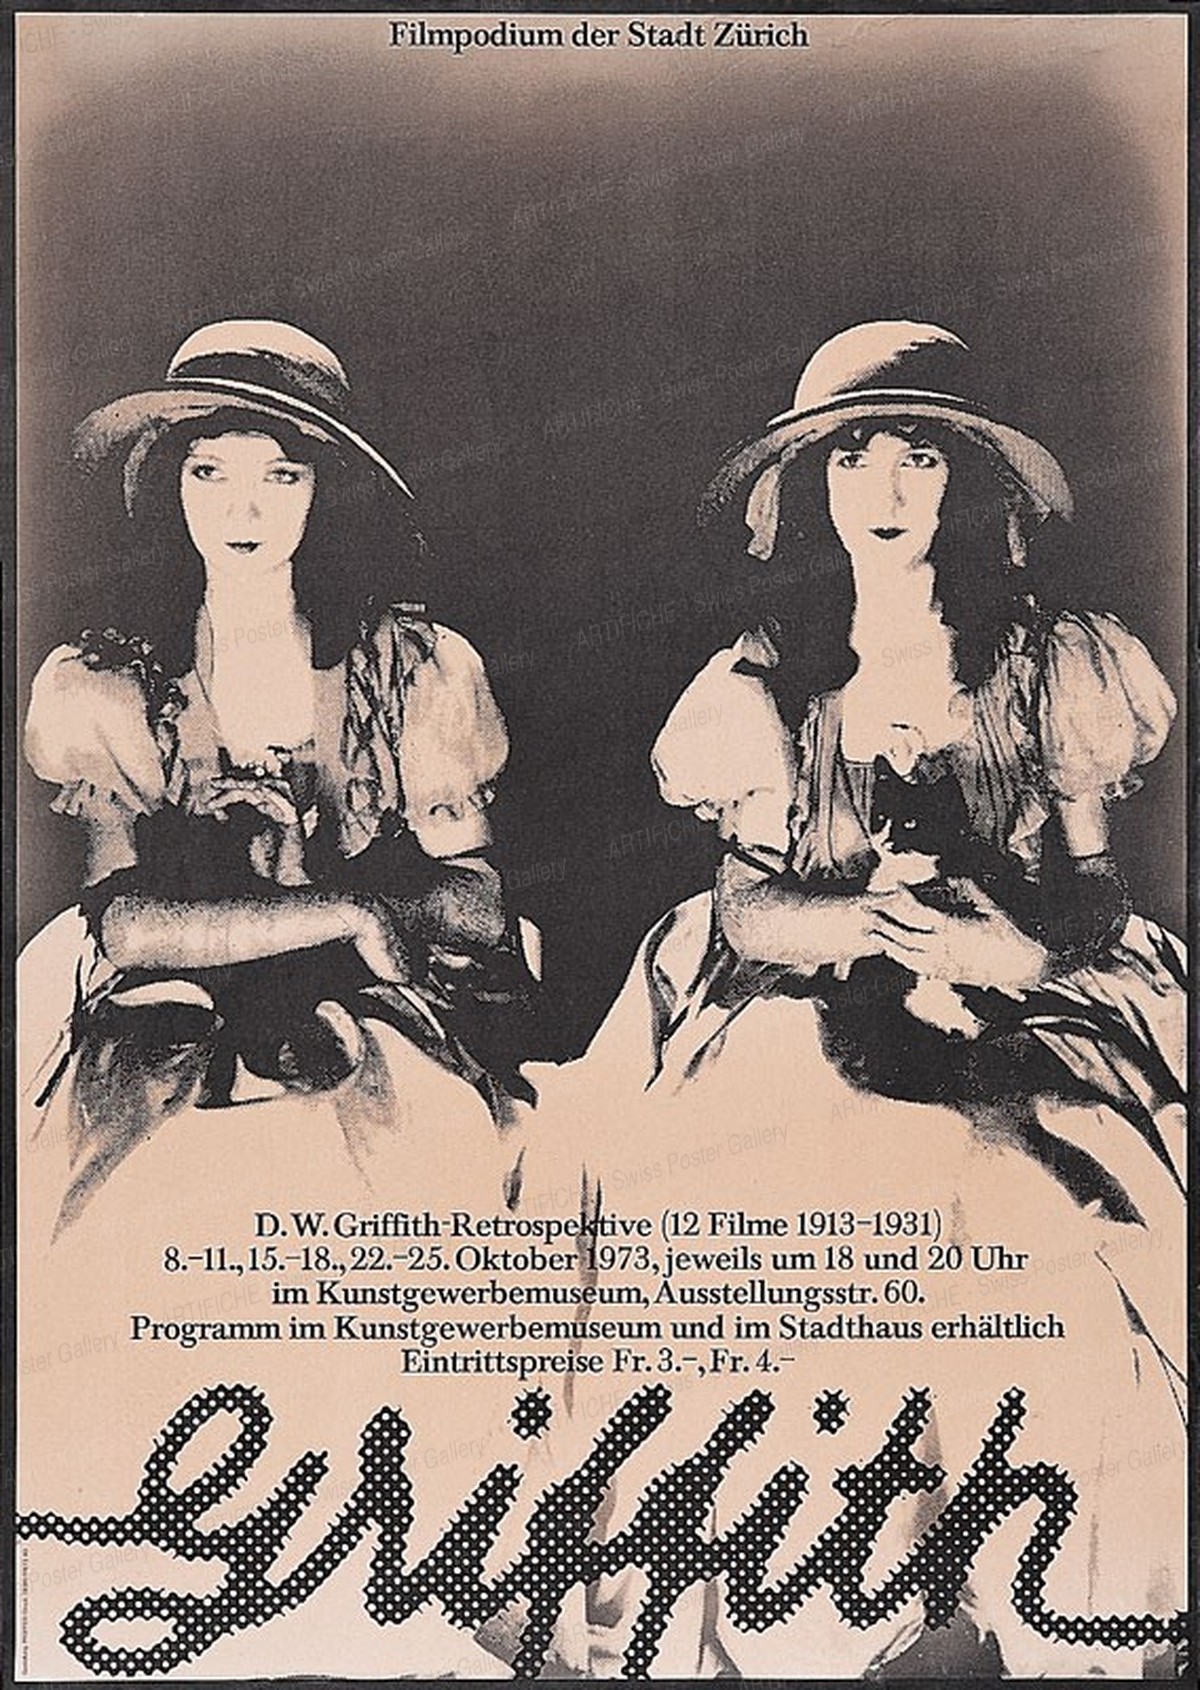 Filmpodium der Stadt Zürich – D.W. Griffith(1875-1948) – Retrospektive im Rahmen der Junifestwochen, Walter Pfeiffer